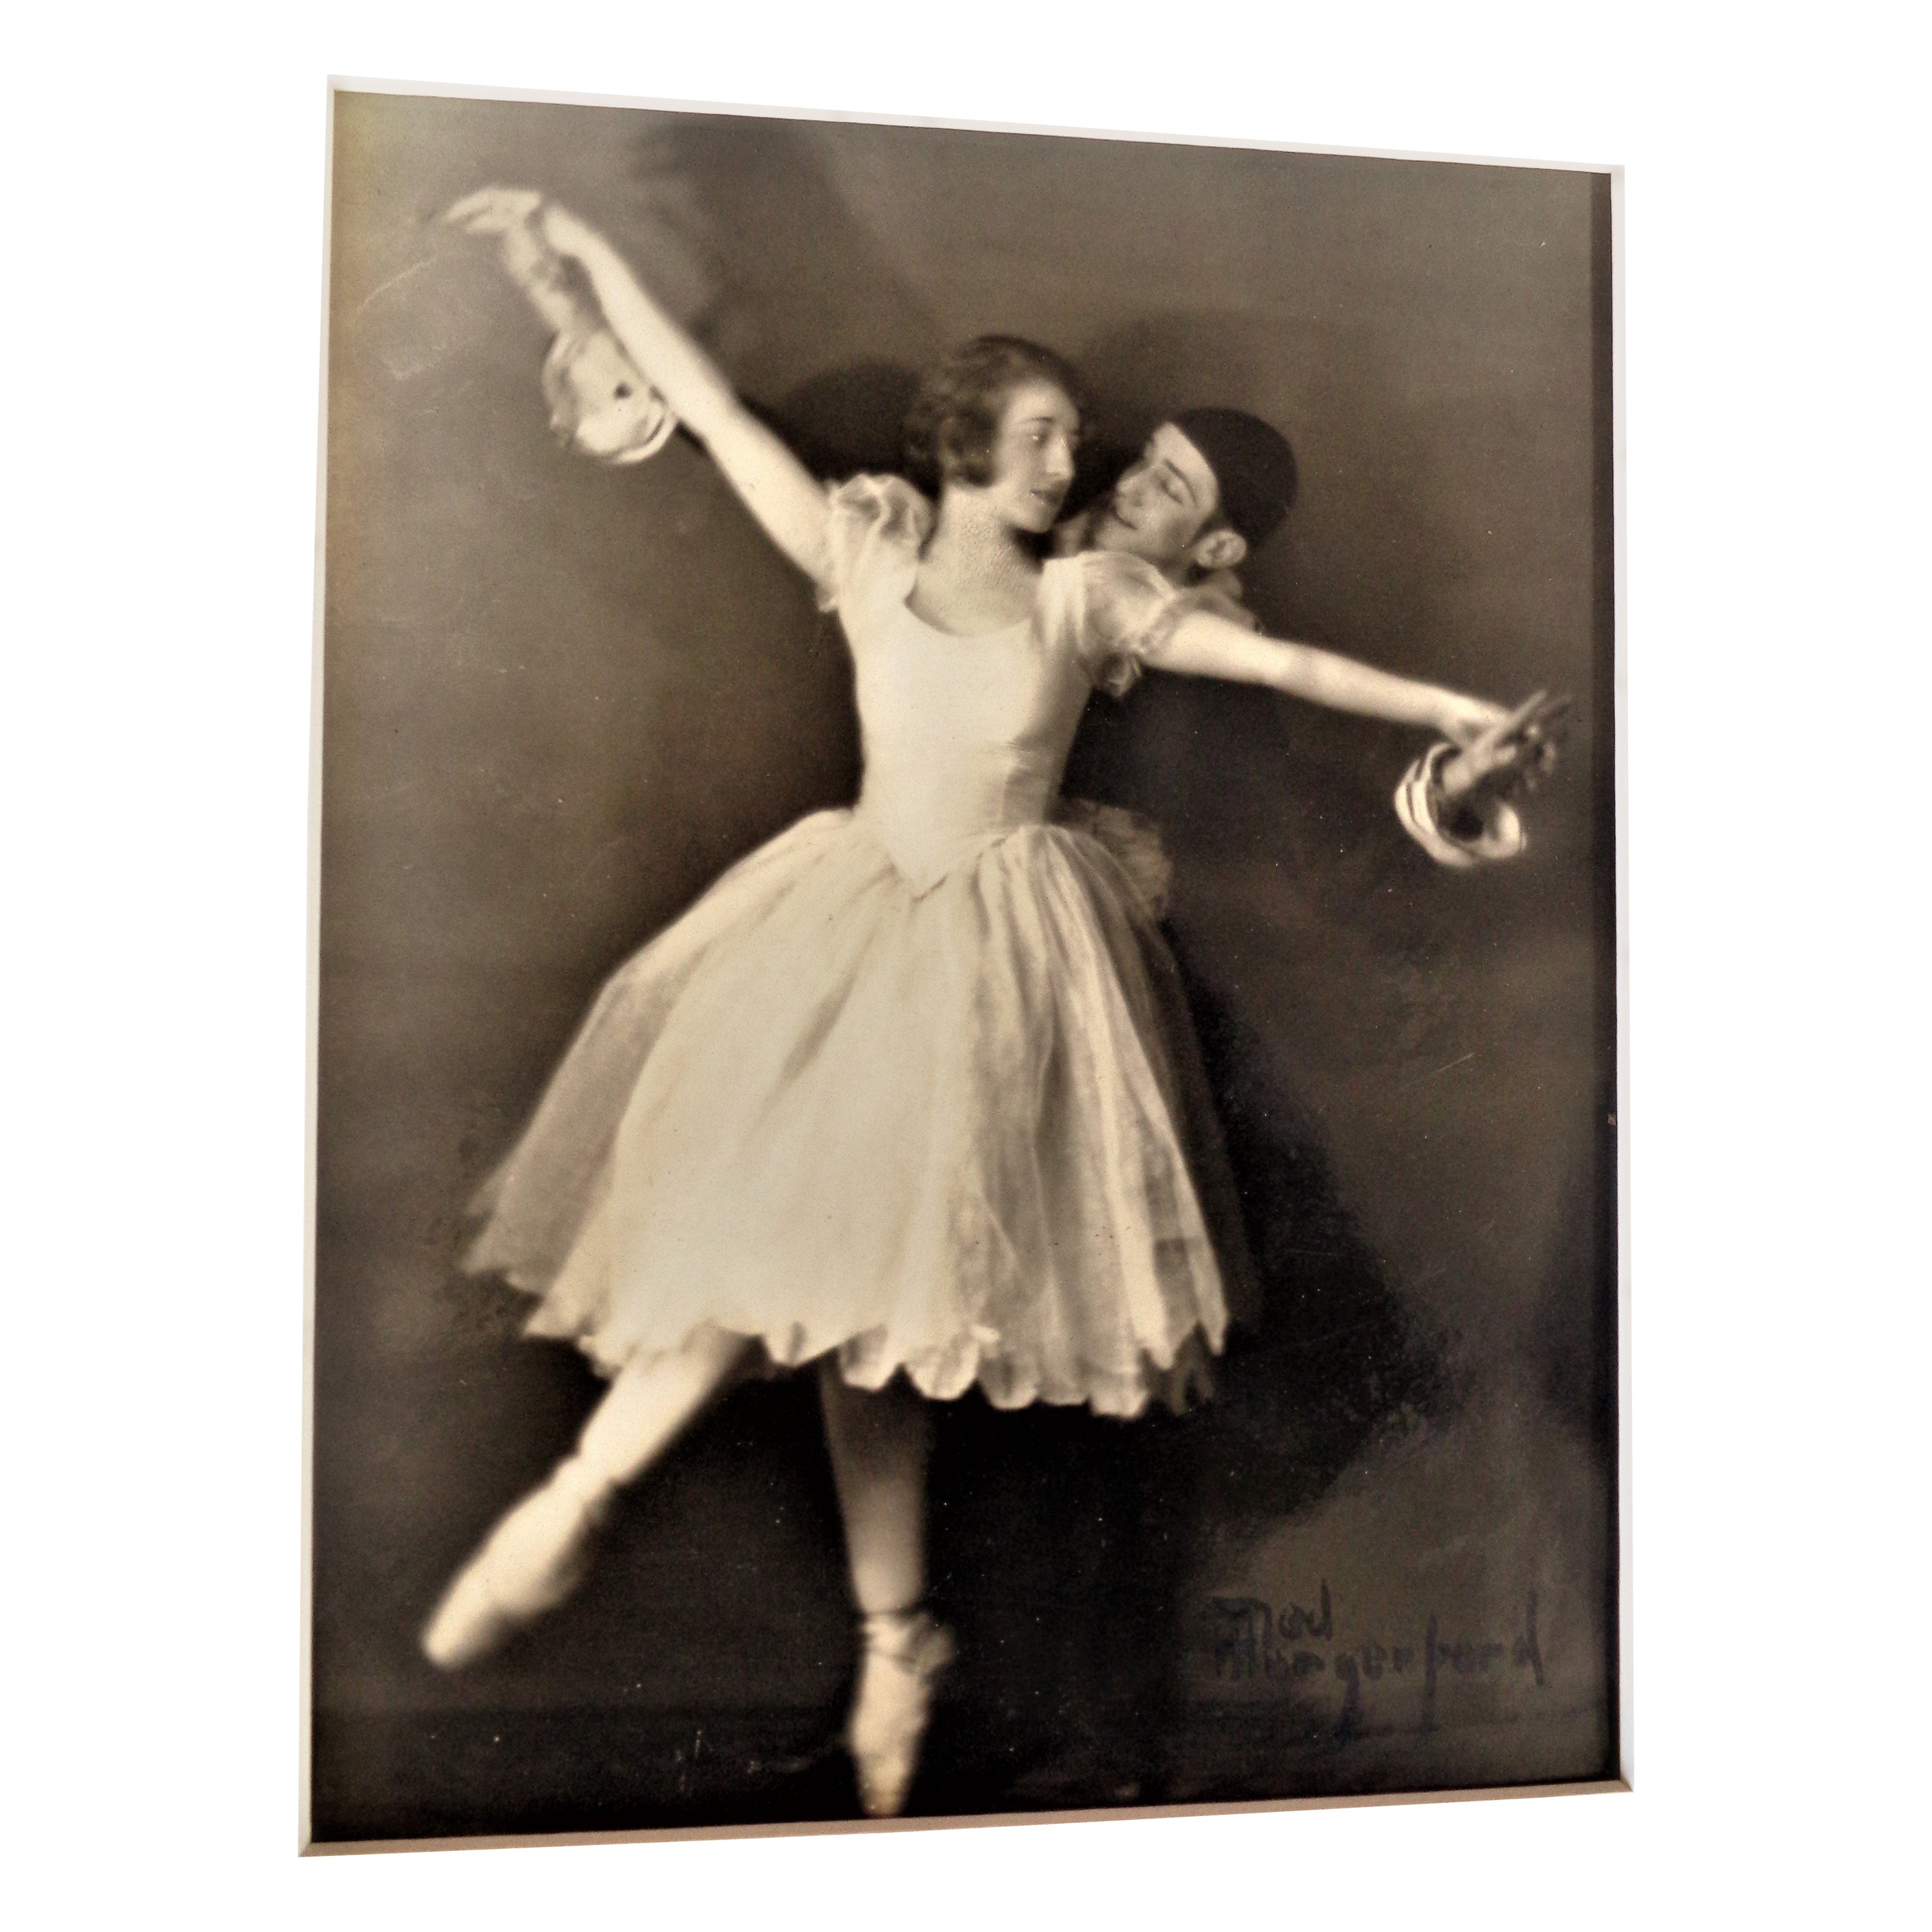 Pictorialistische Sepia-Ton-Gelatine-Silberdruck-Fotografie von Ballett Tänzern, 1910